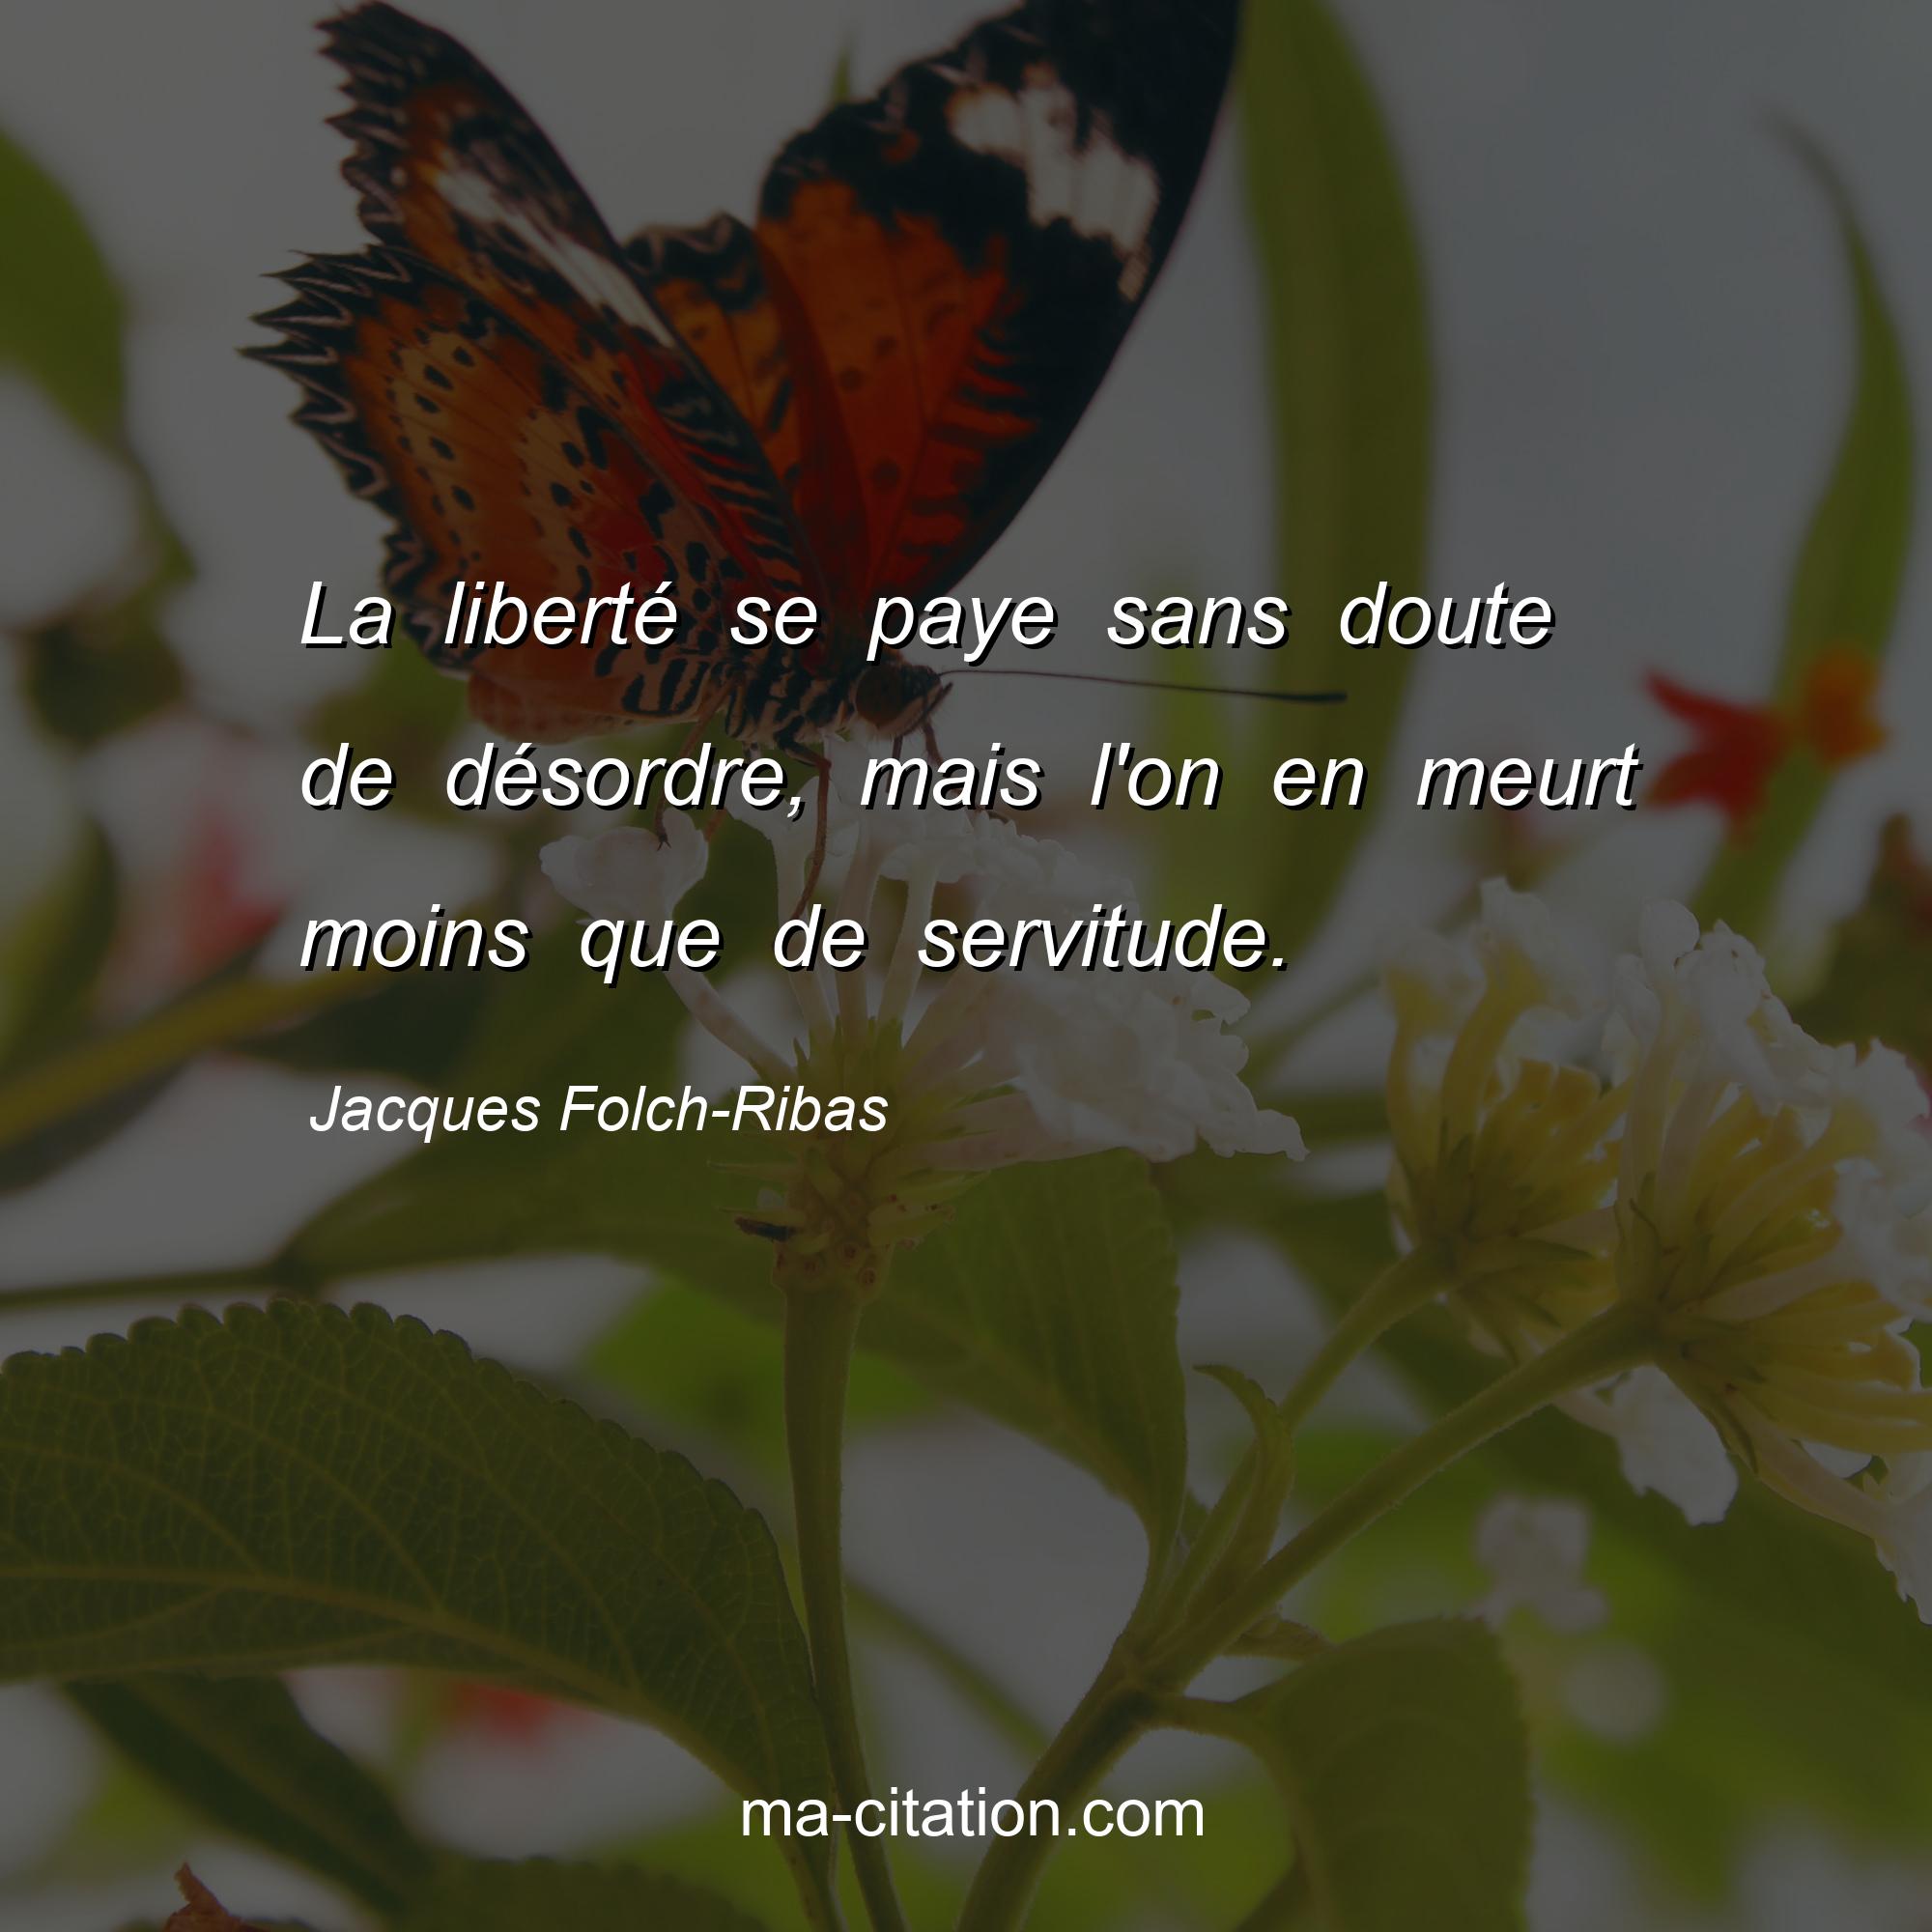 Jacques Folch-Ribas : La liberté se paye sans doute de désordre, mais l'on en meurt moins que de servitude.